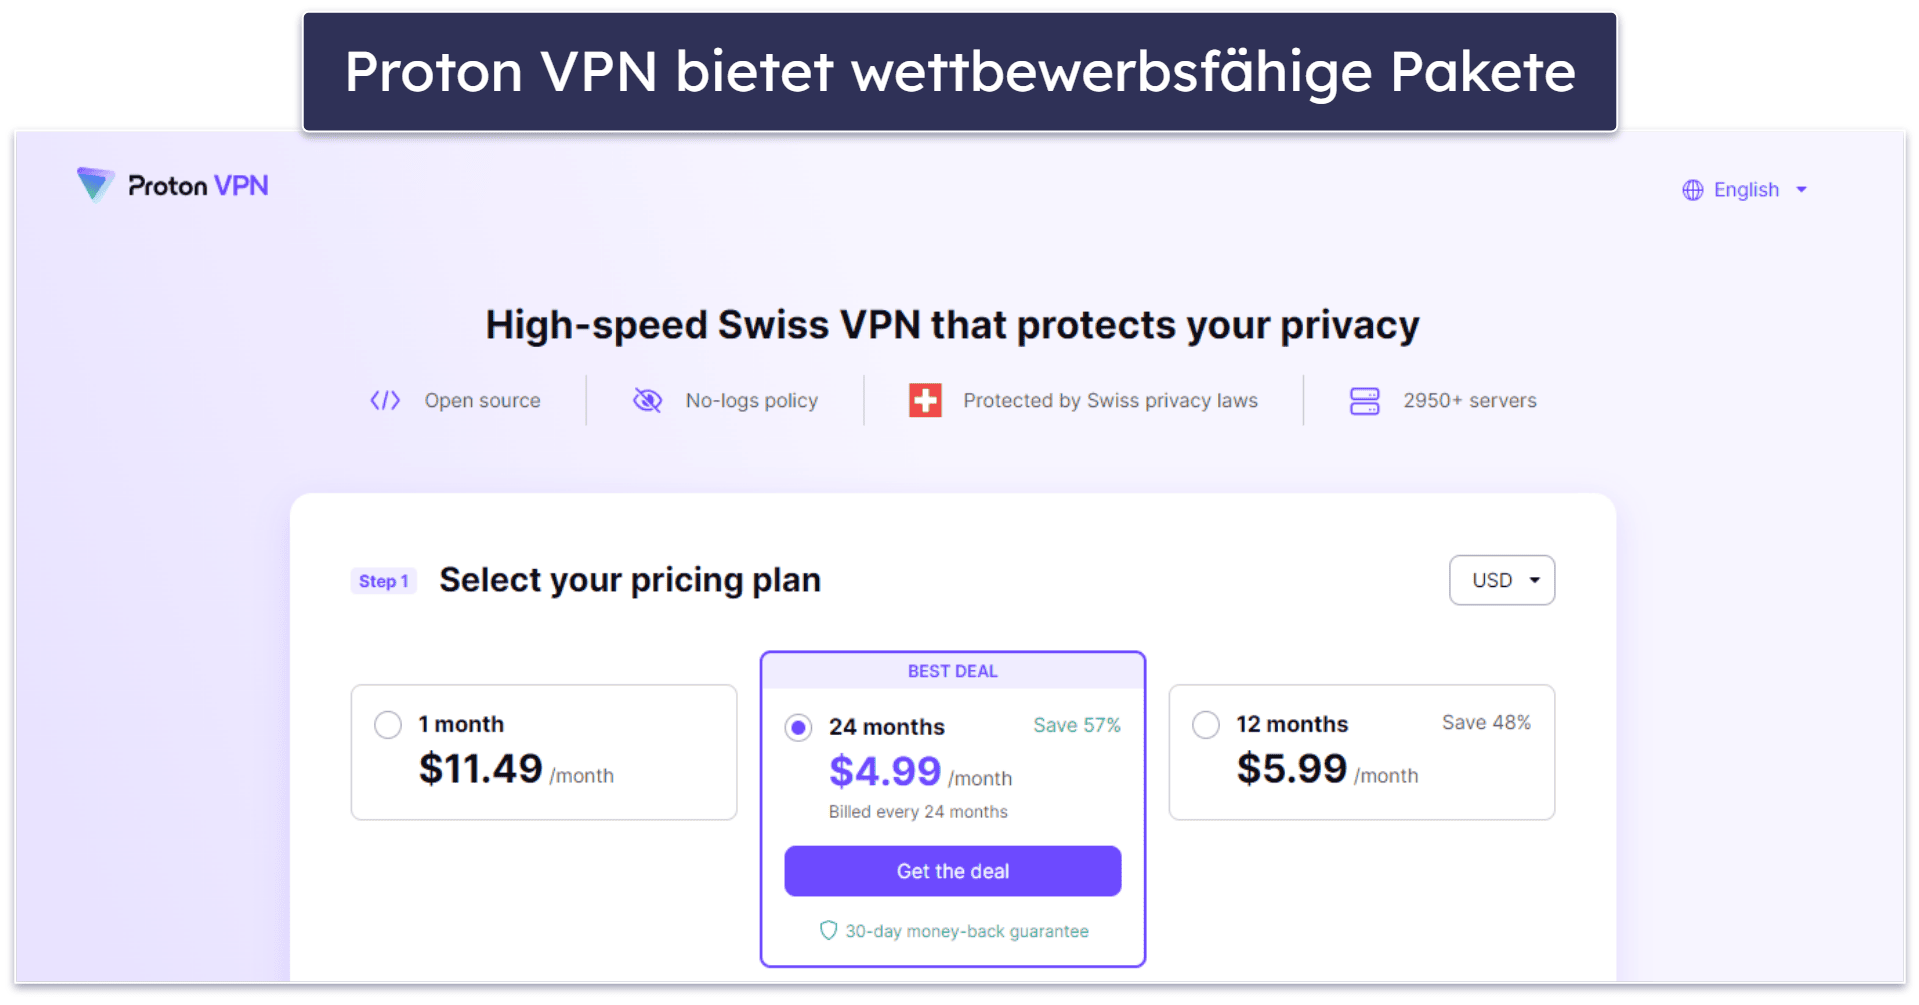 7. Proton VPN – hochwertige Sicherheits- und Datenschutzfunktionen